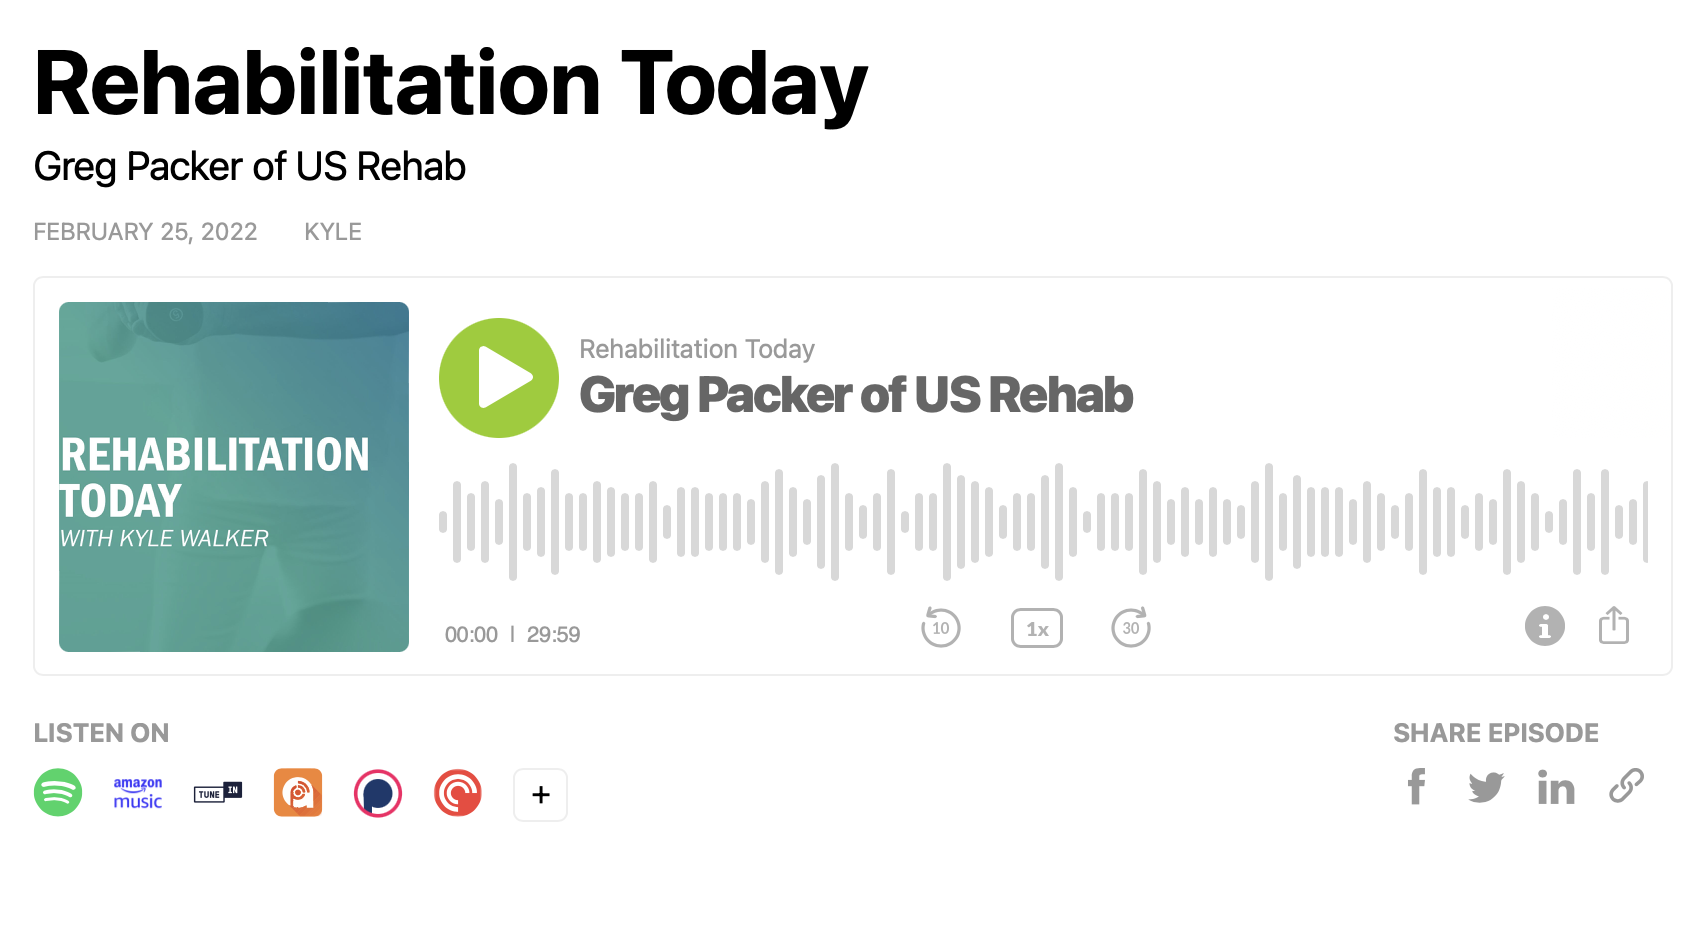 Greg Packer of US Rehab